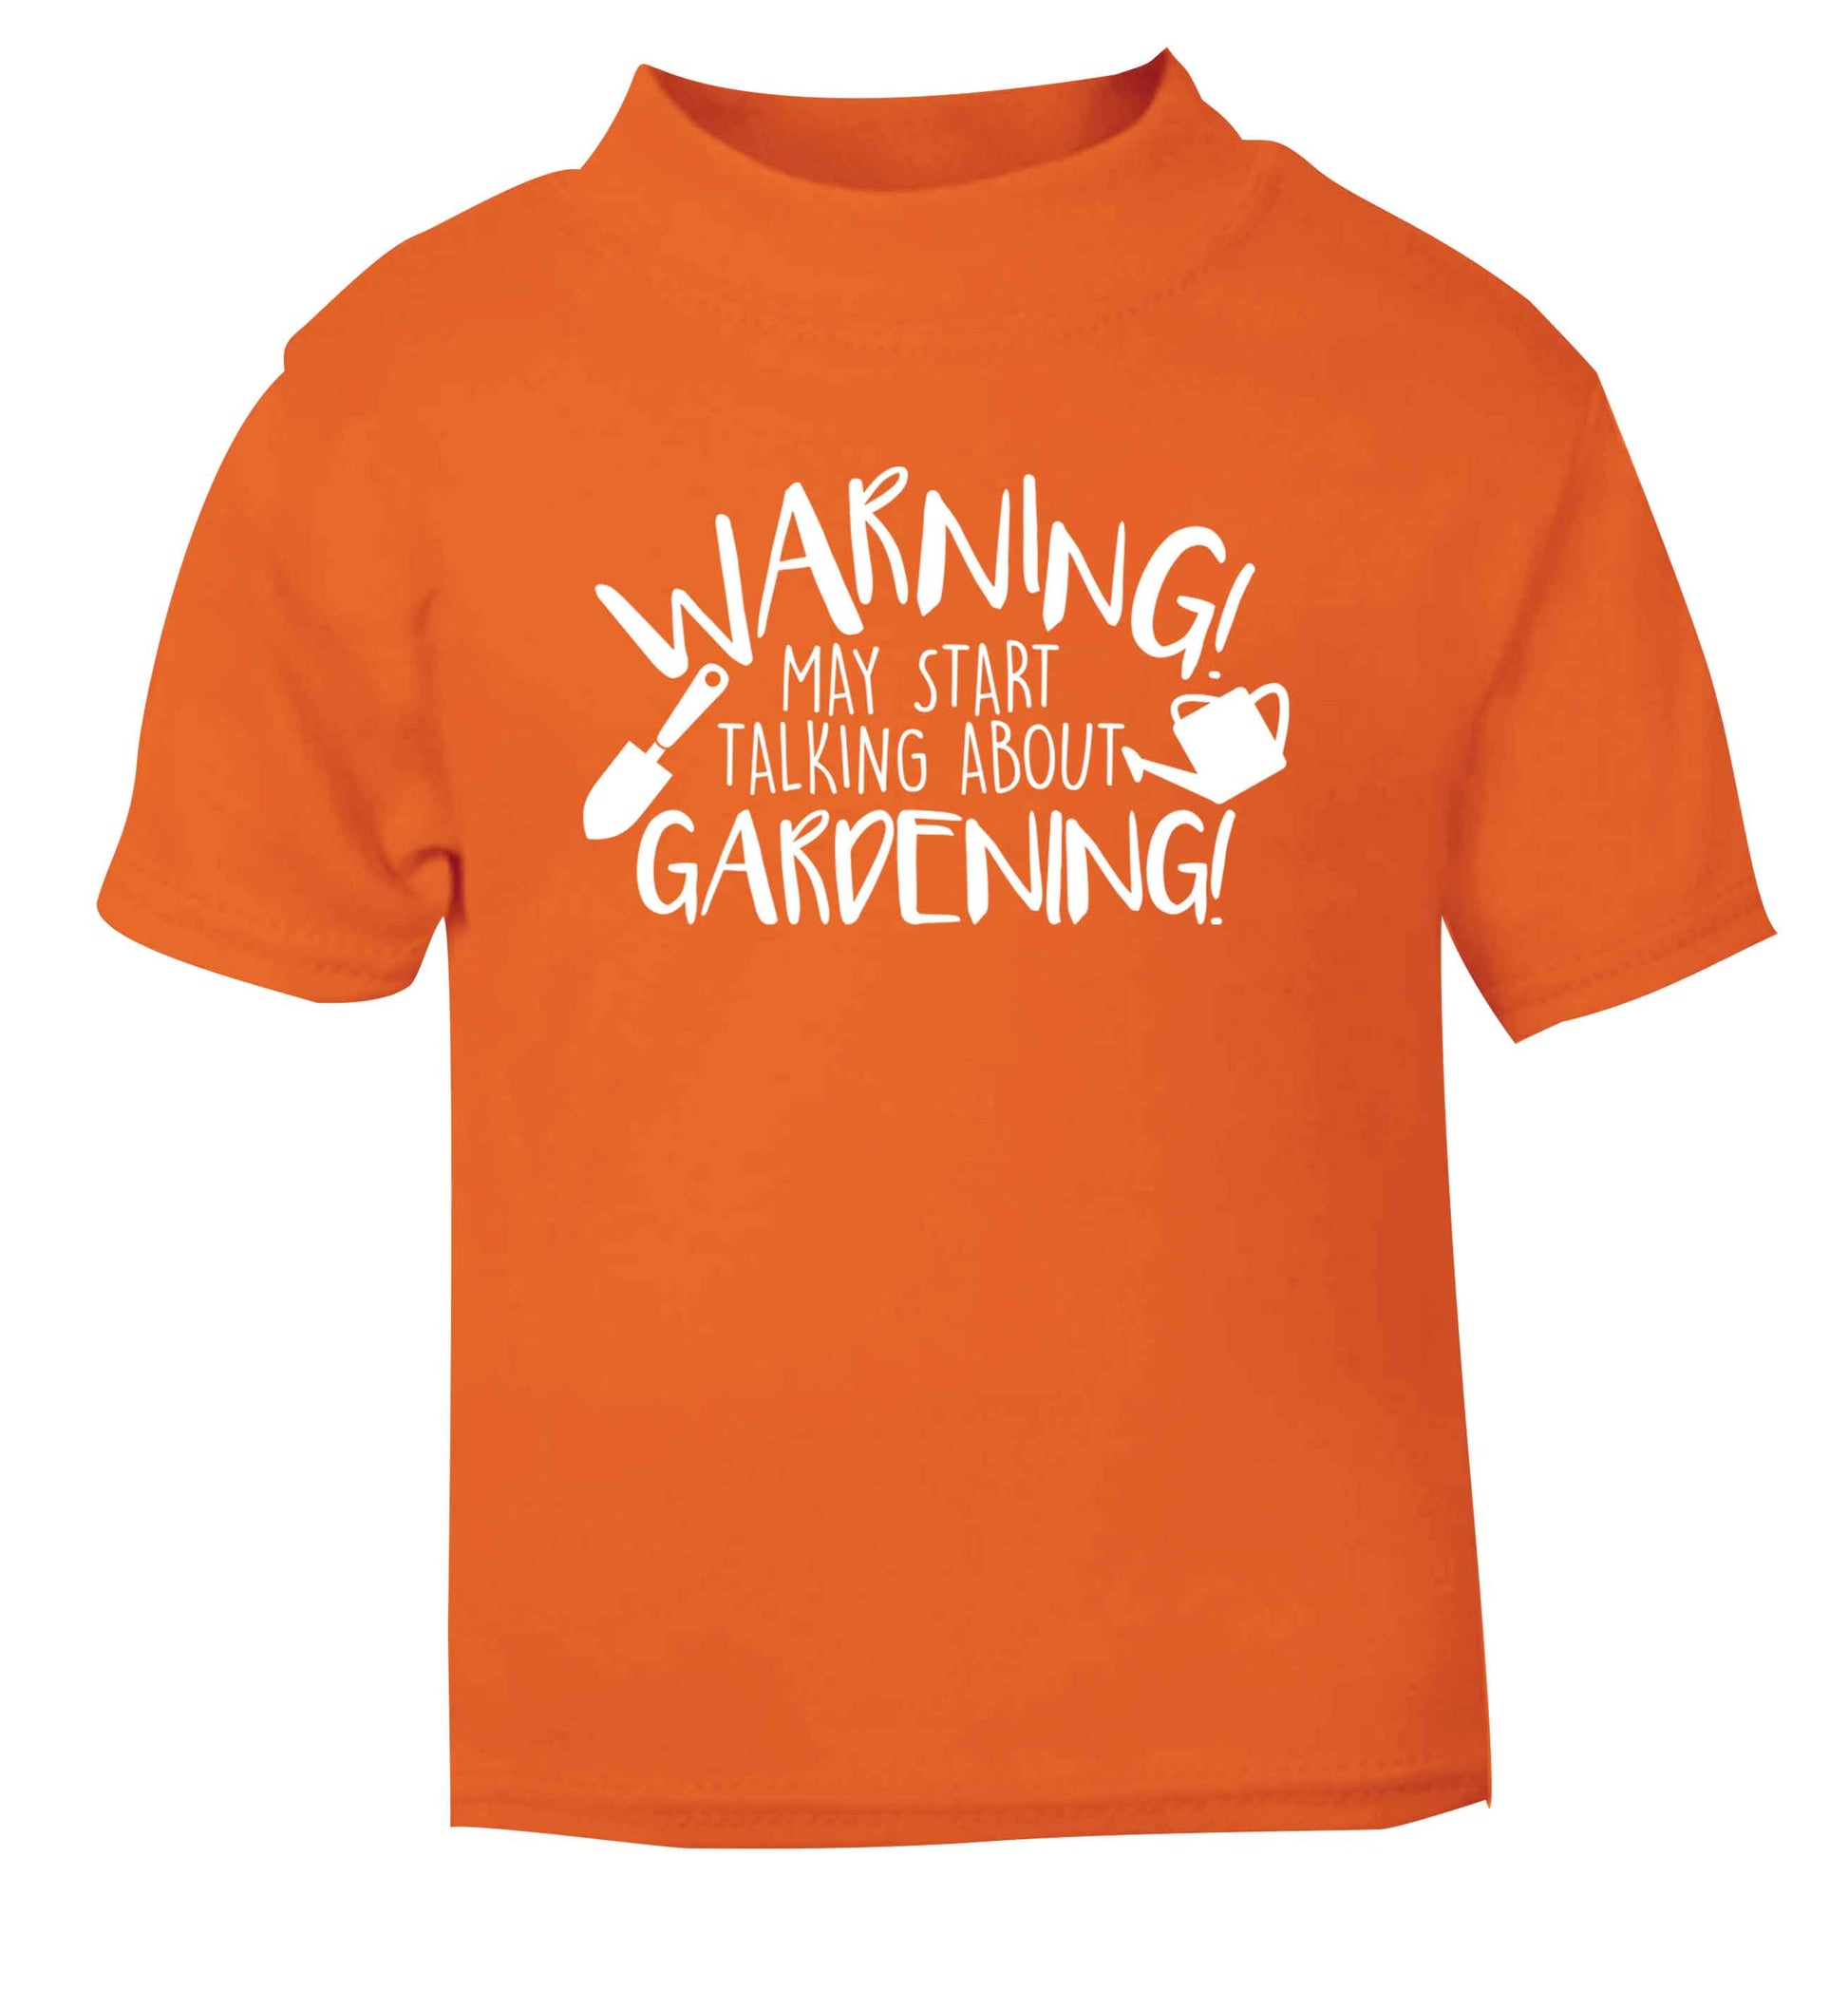 Warning may start talking about gardening orange Baby Toddler Tshirt 2 Years